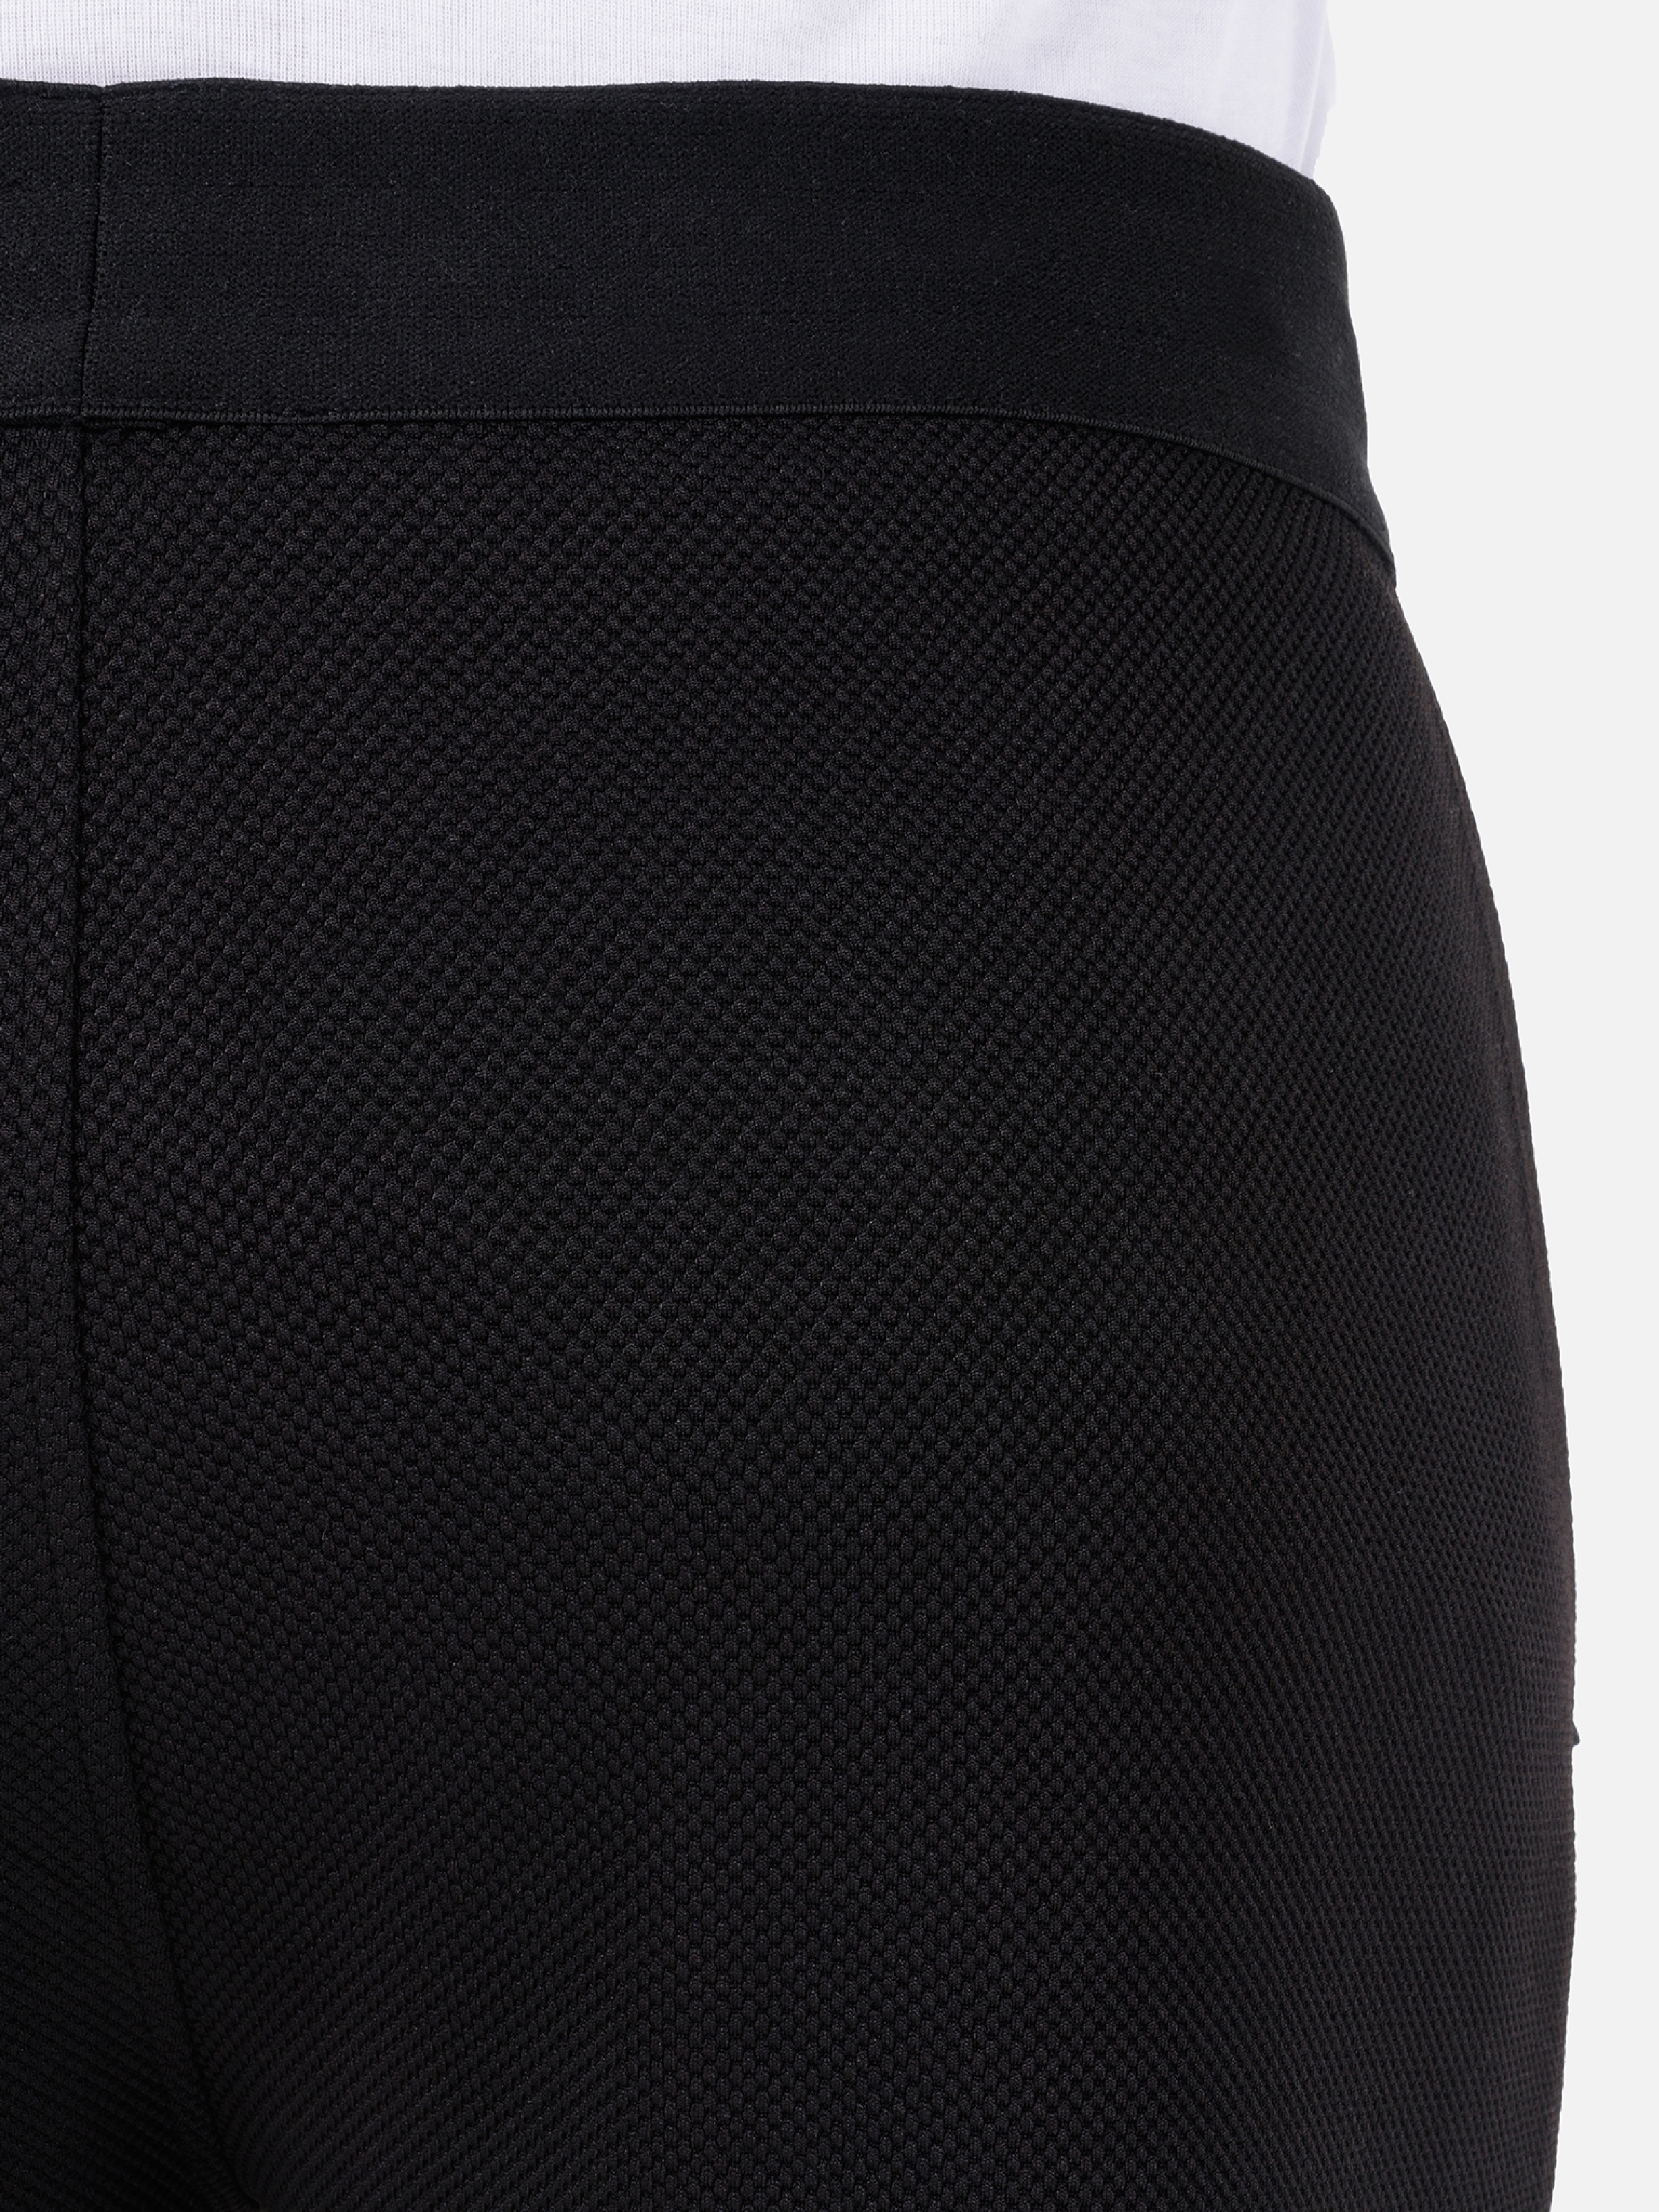 Afișați detalii pentru Pantaloni De Trening De Barbati Negru Slim Fit  CL1067602